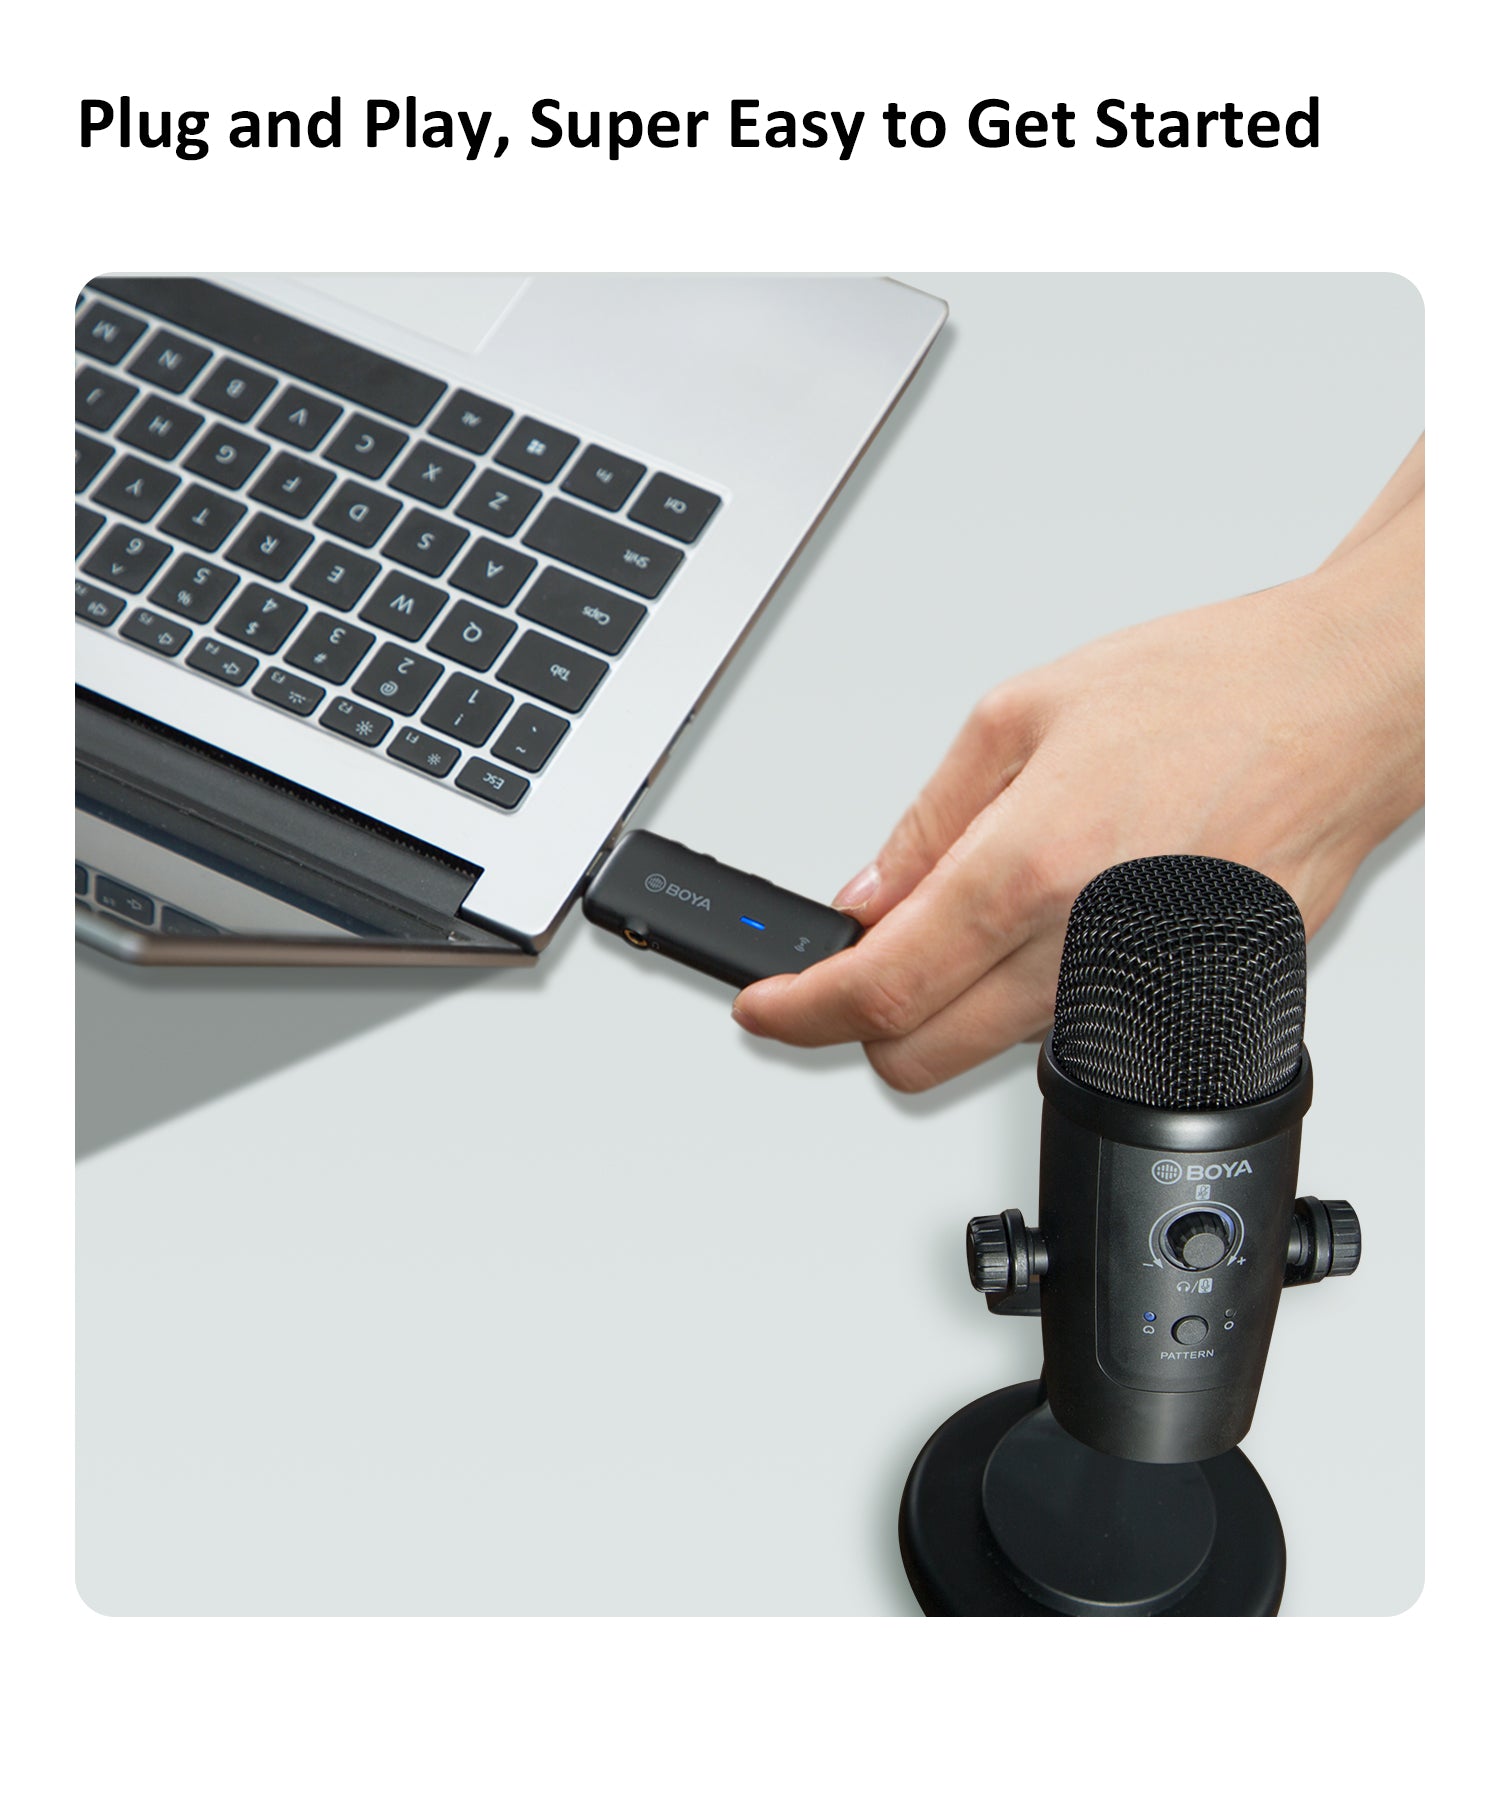 BOYA BY-PM500W 2.4GHz Podcast Streaming Wireless USB Microphone